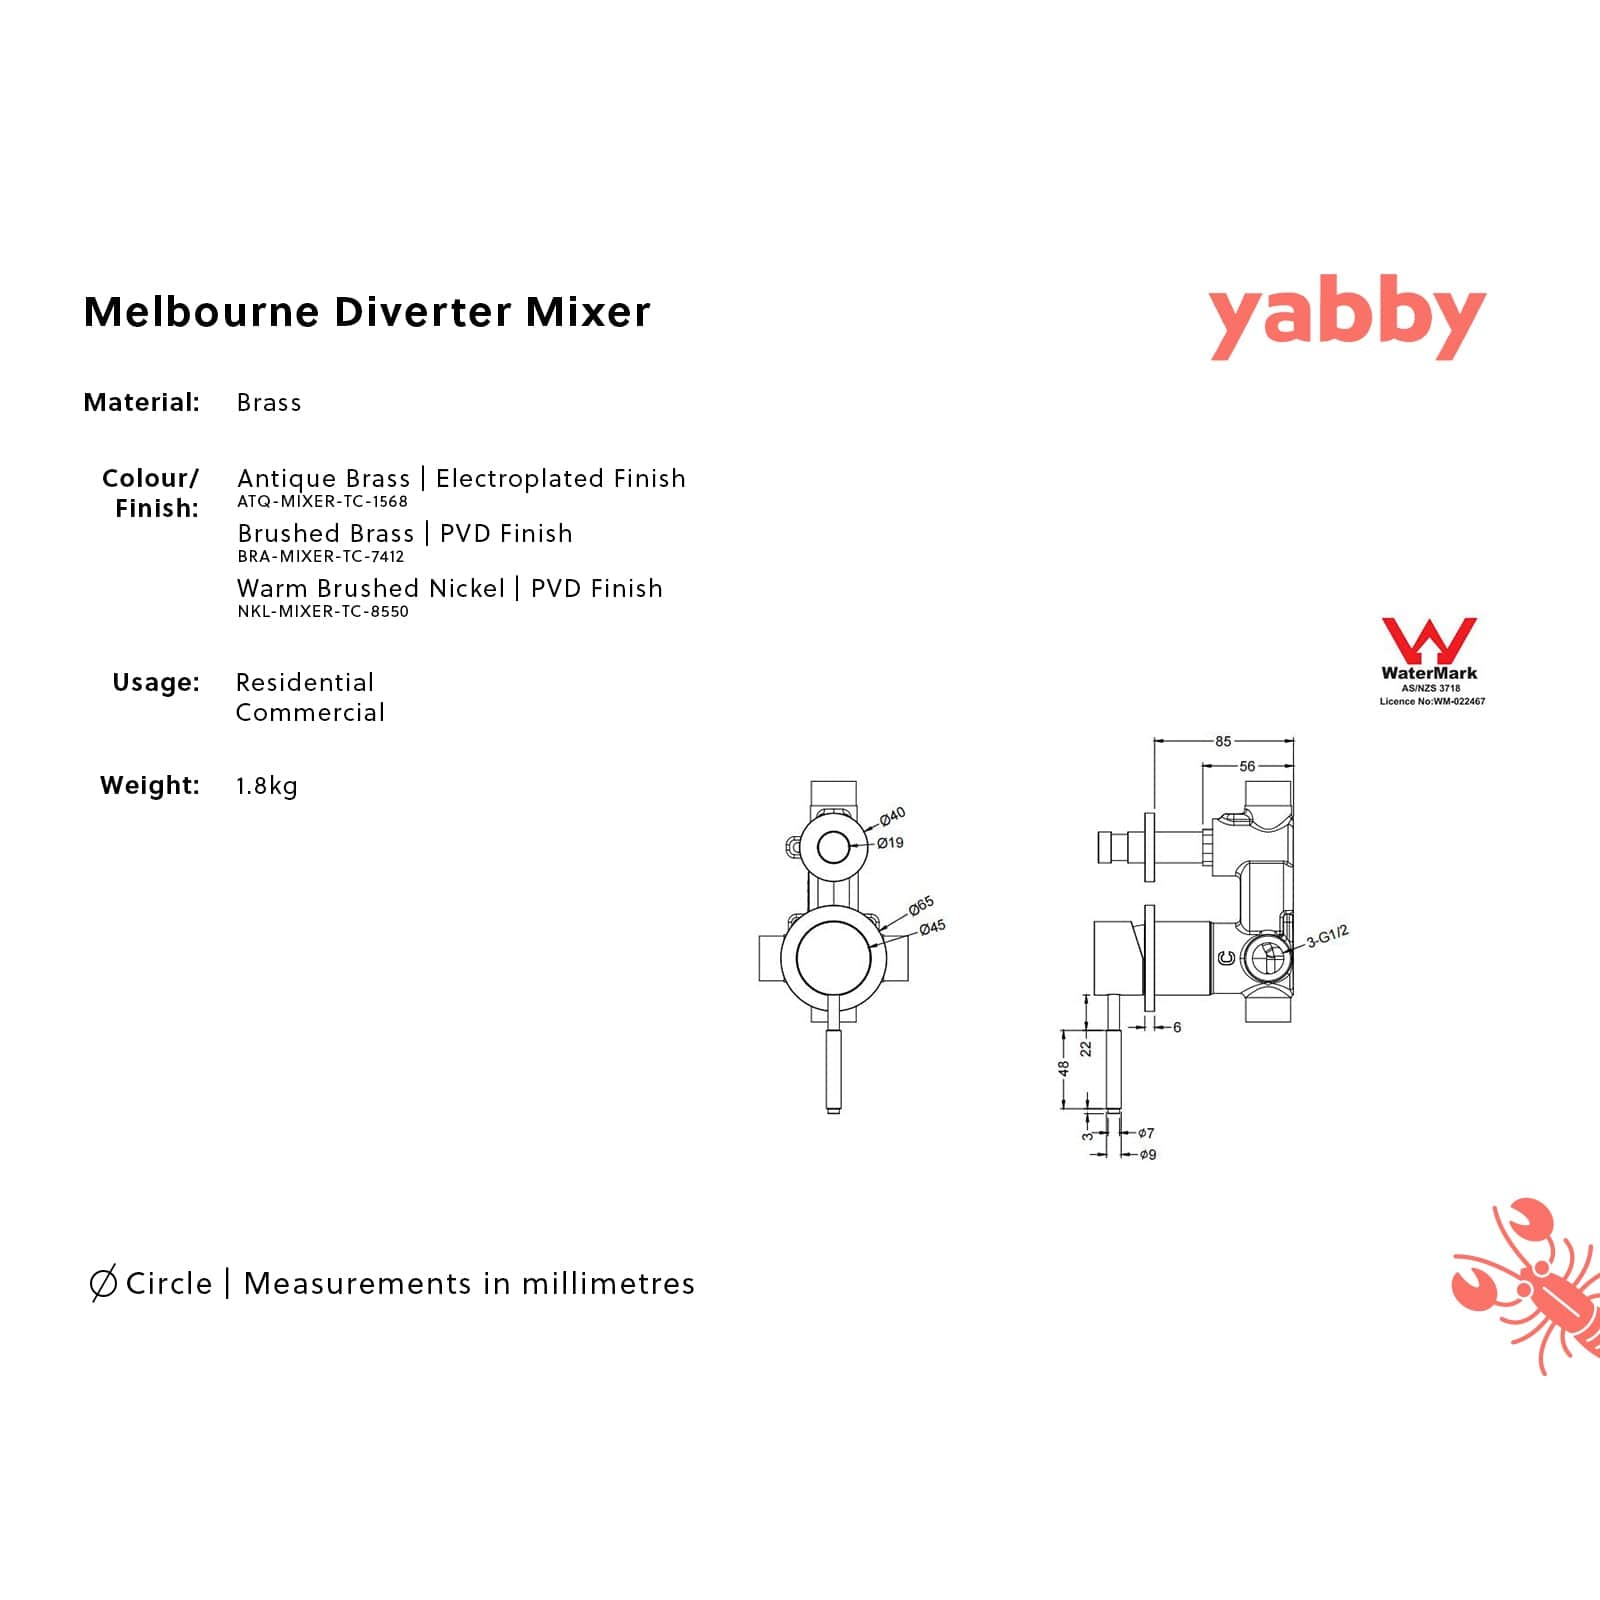 TileCloud TAPWARE Melbourne Diverter Mixer Antique Brass